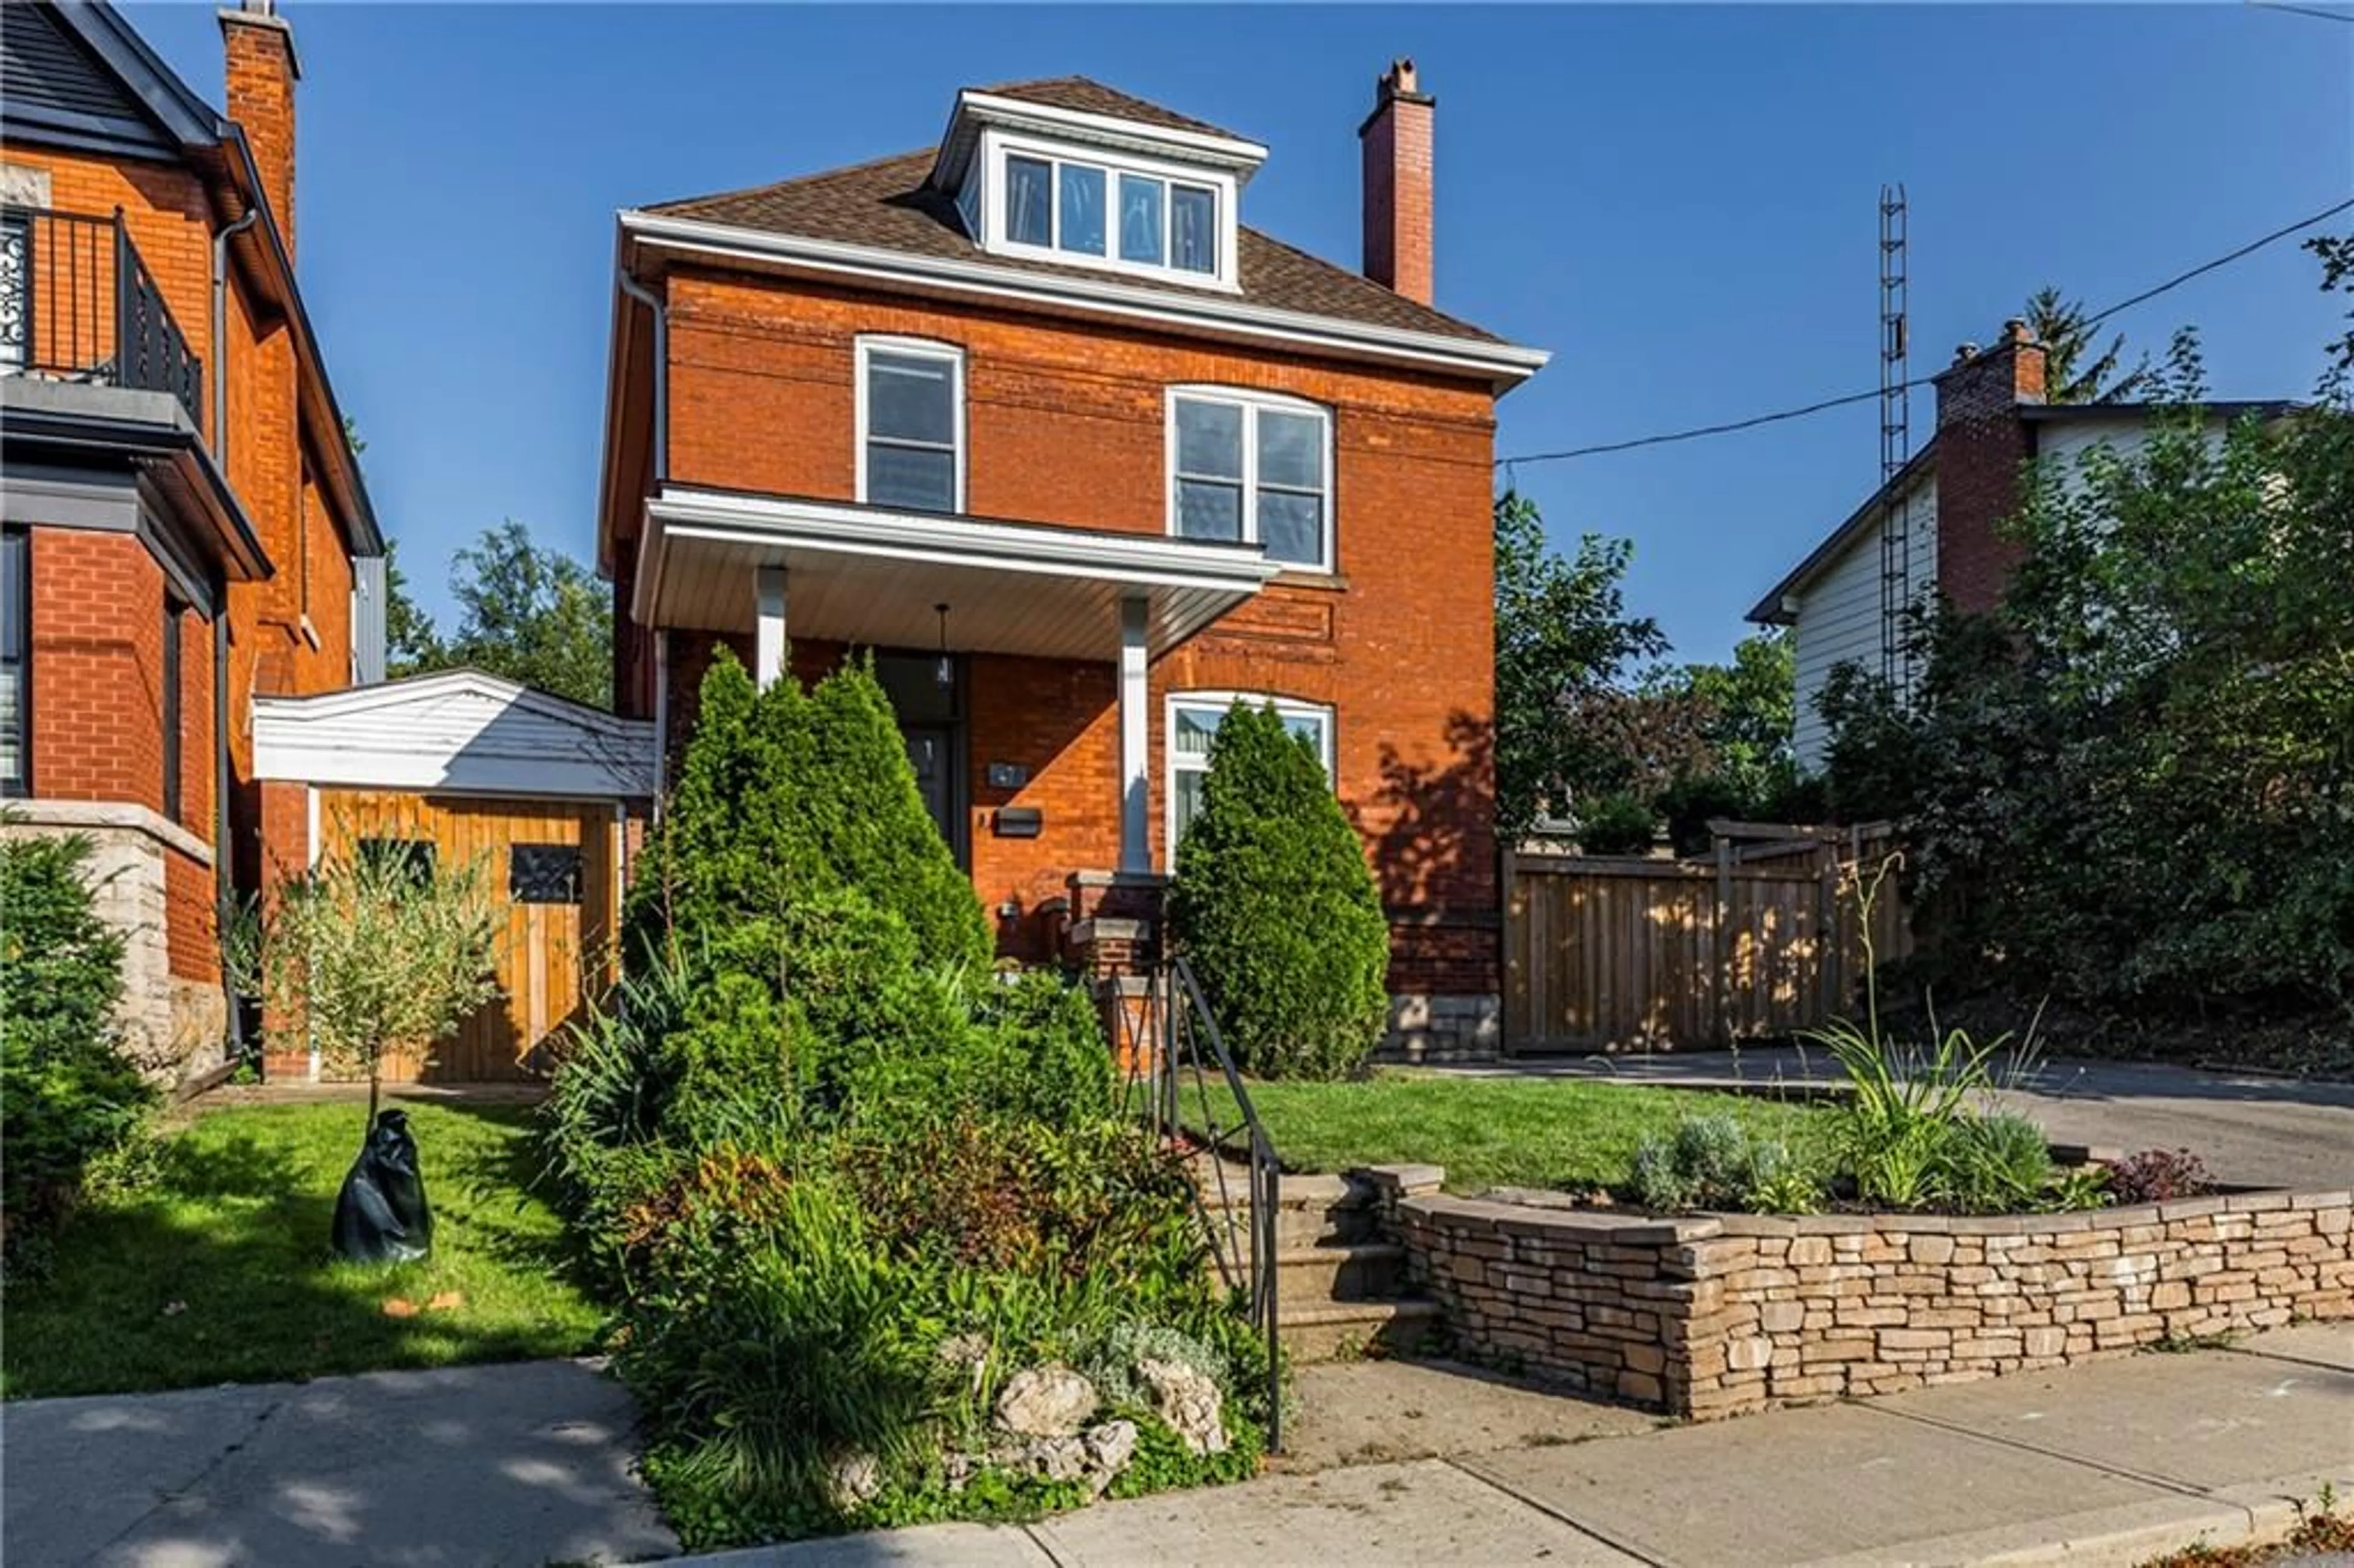 Home with brick exterior material for 47 Mountain Ave, Hamilton Ontario L8P 4E8